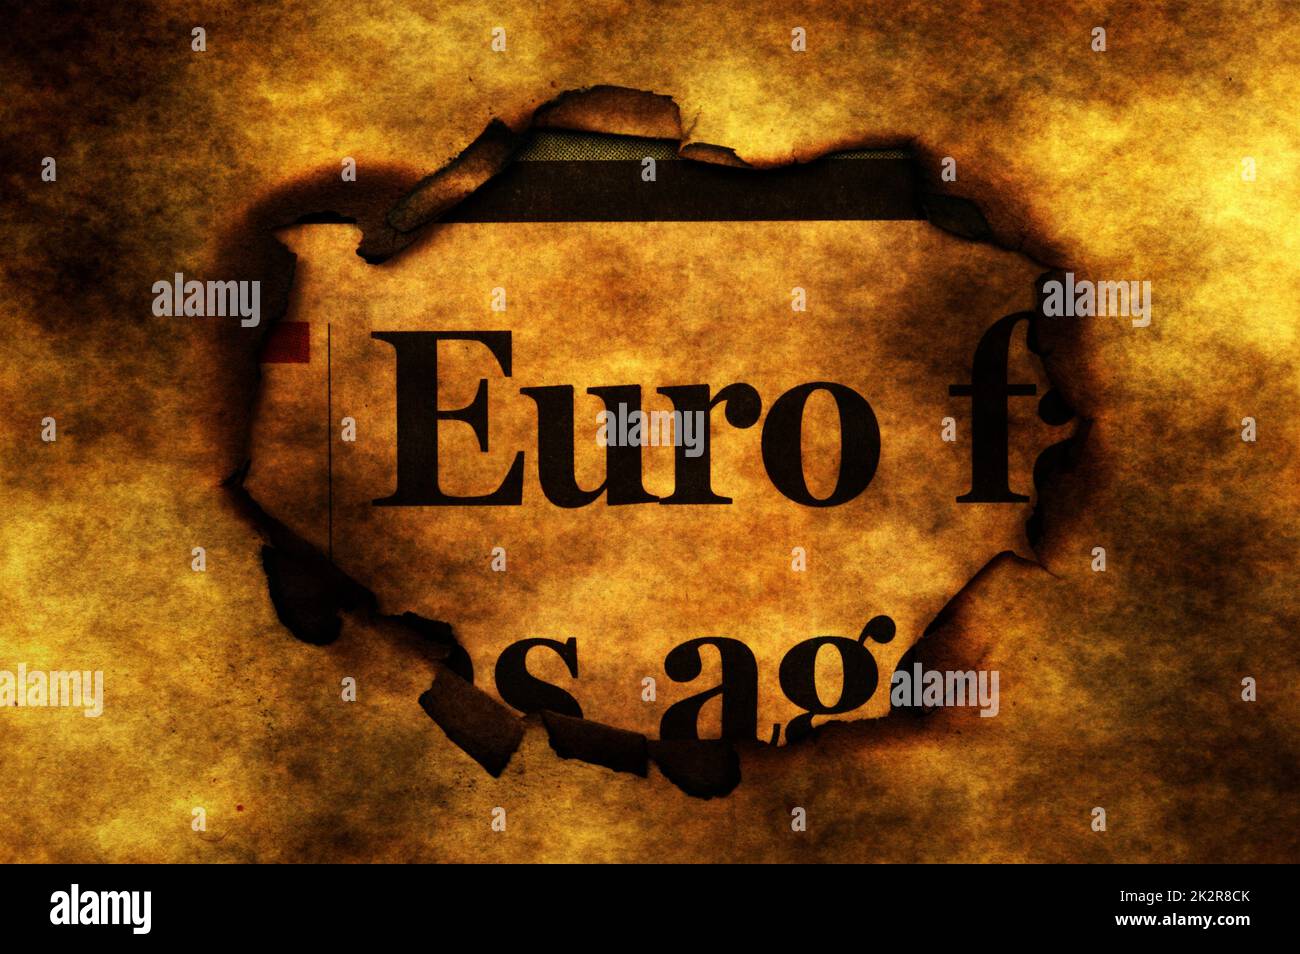 Euro and burning paper hole Stock Photo